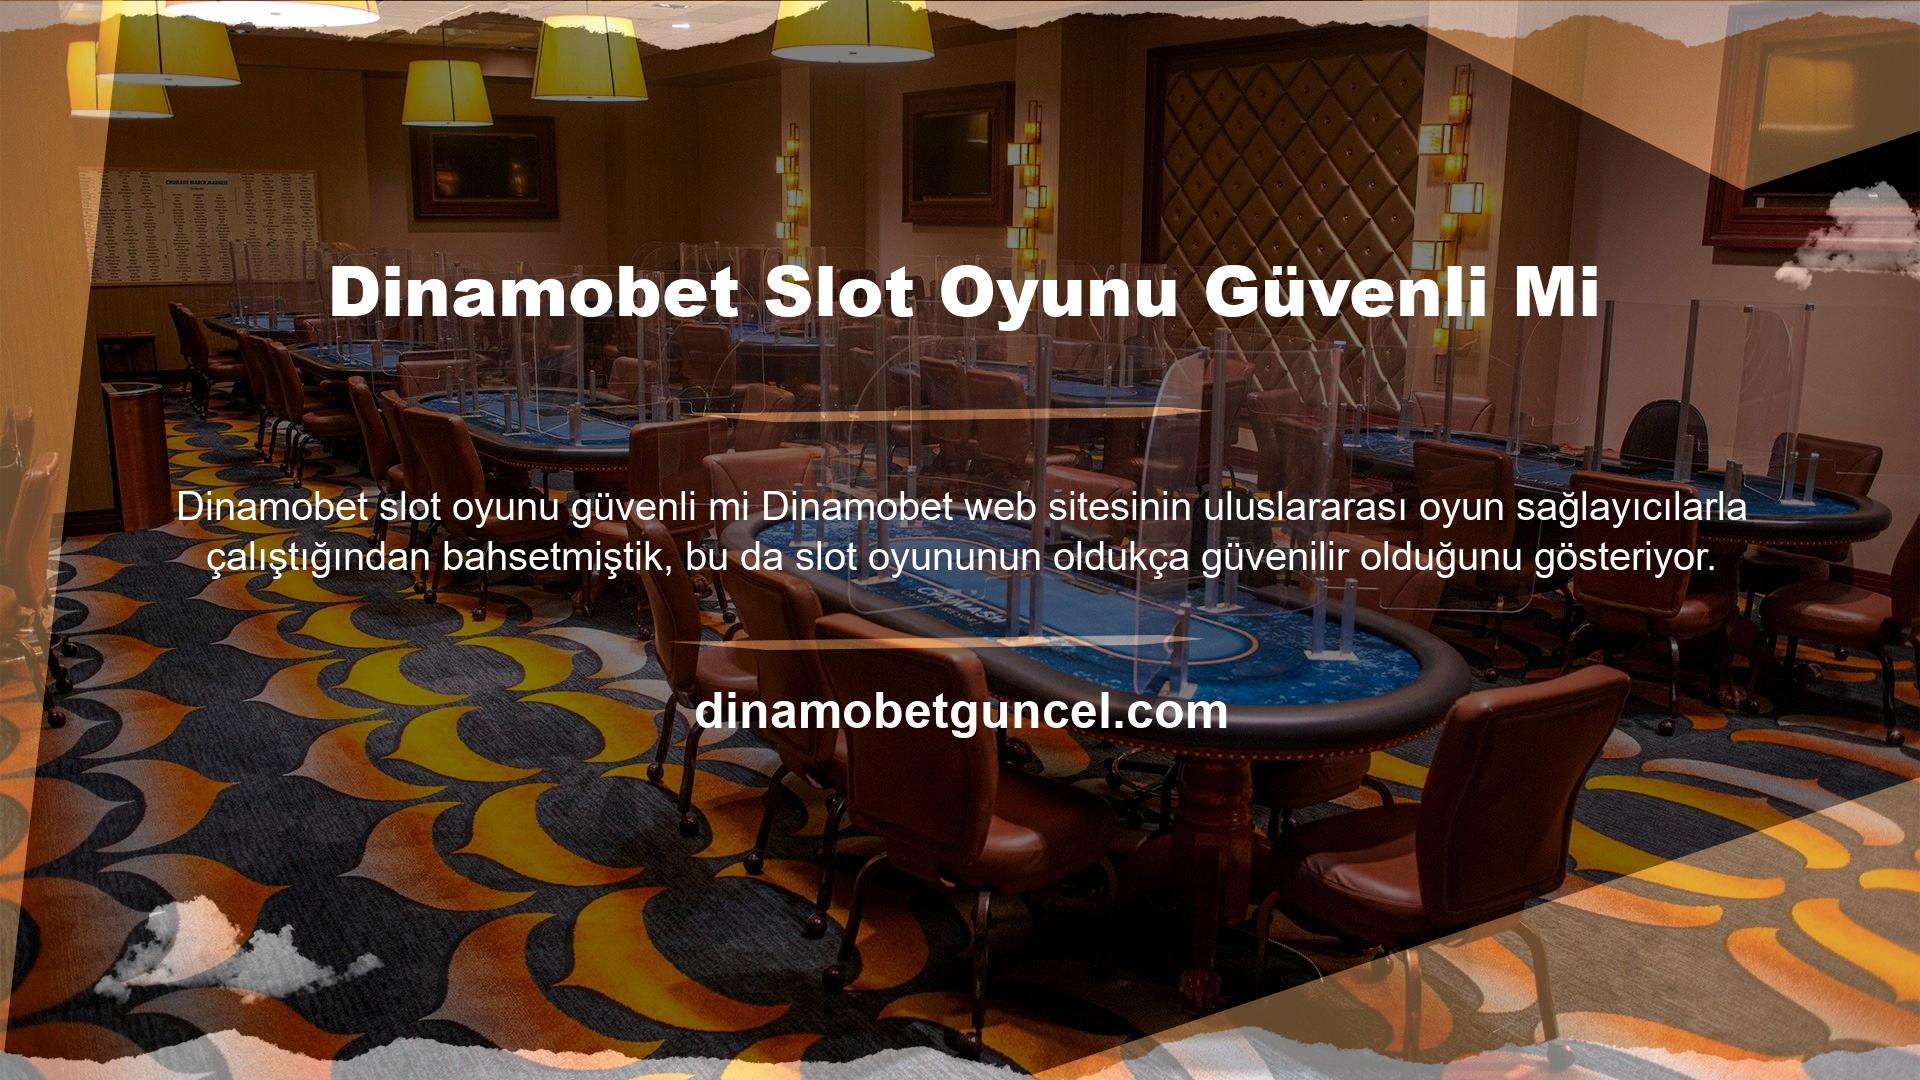 Aynı zamanda Dinamobet iş yapısı, uzun vadeli hizmeti ve lisanslaması, slot oyunları dahil tüm oyunların güvenilir olduğunu göstermektedir